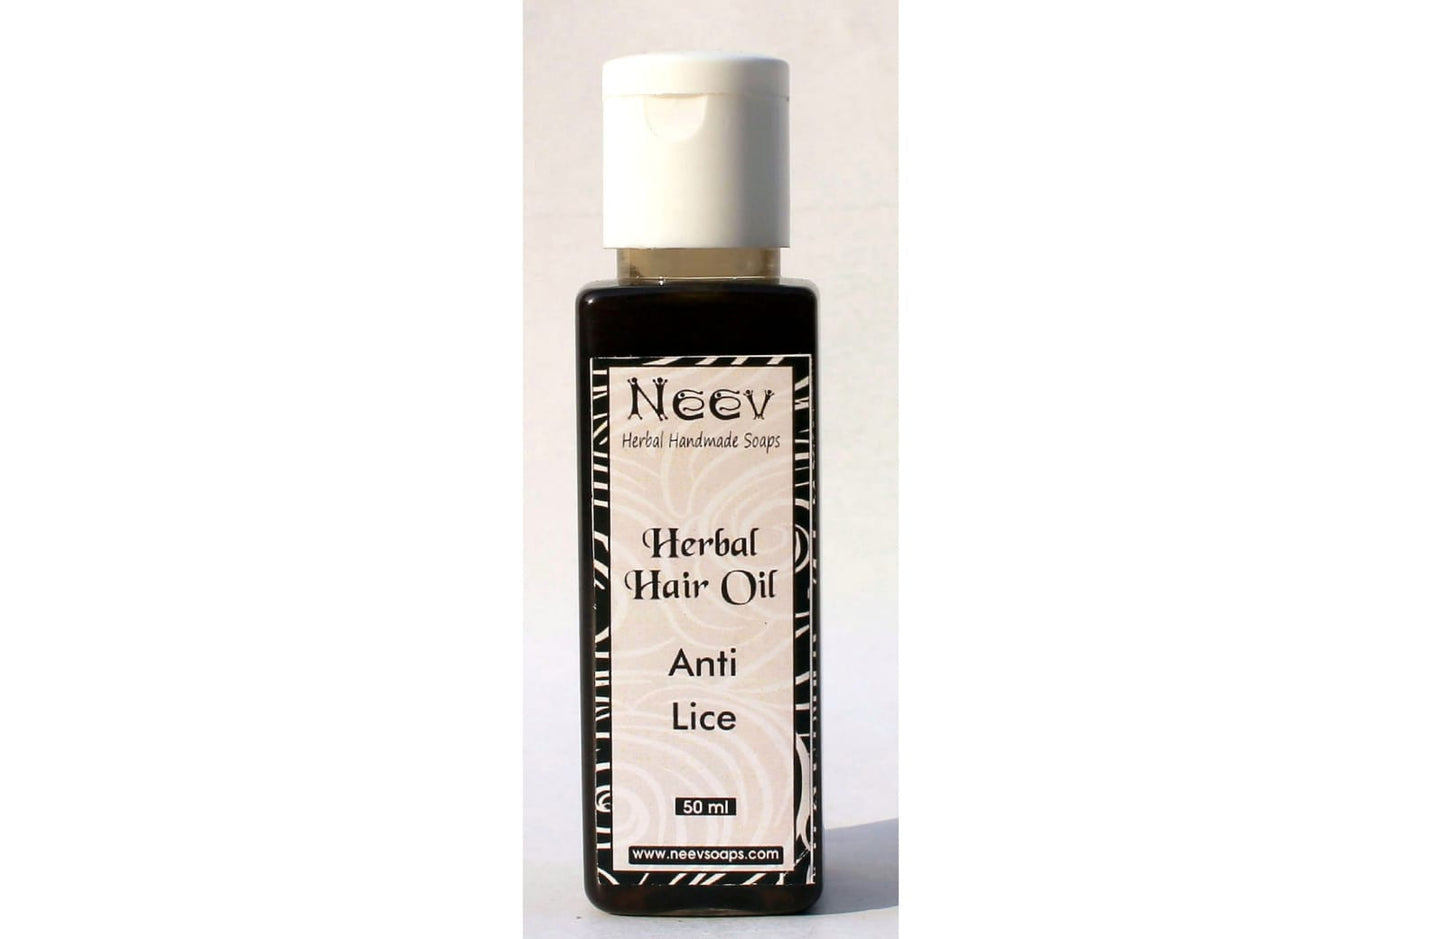 Anti Lice Herbal Hair Oil 50ml